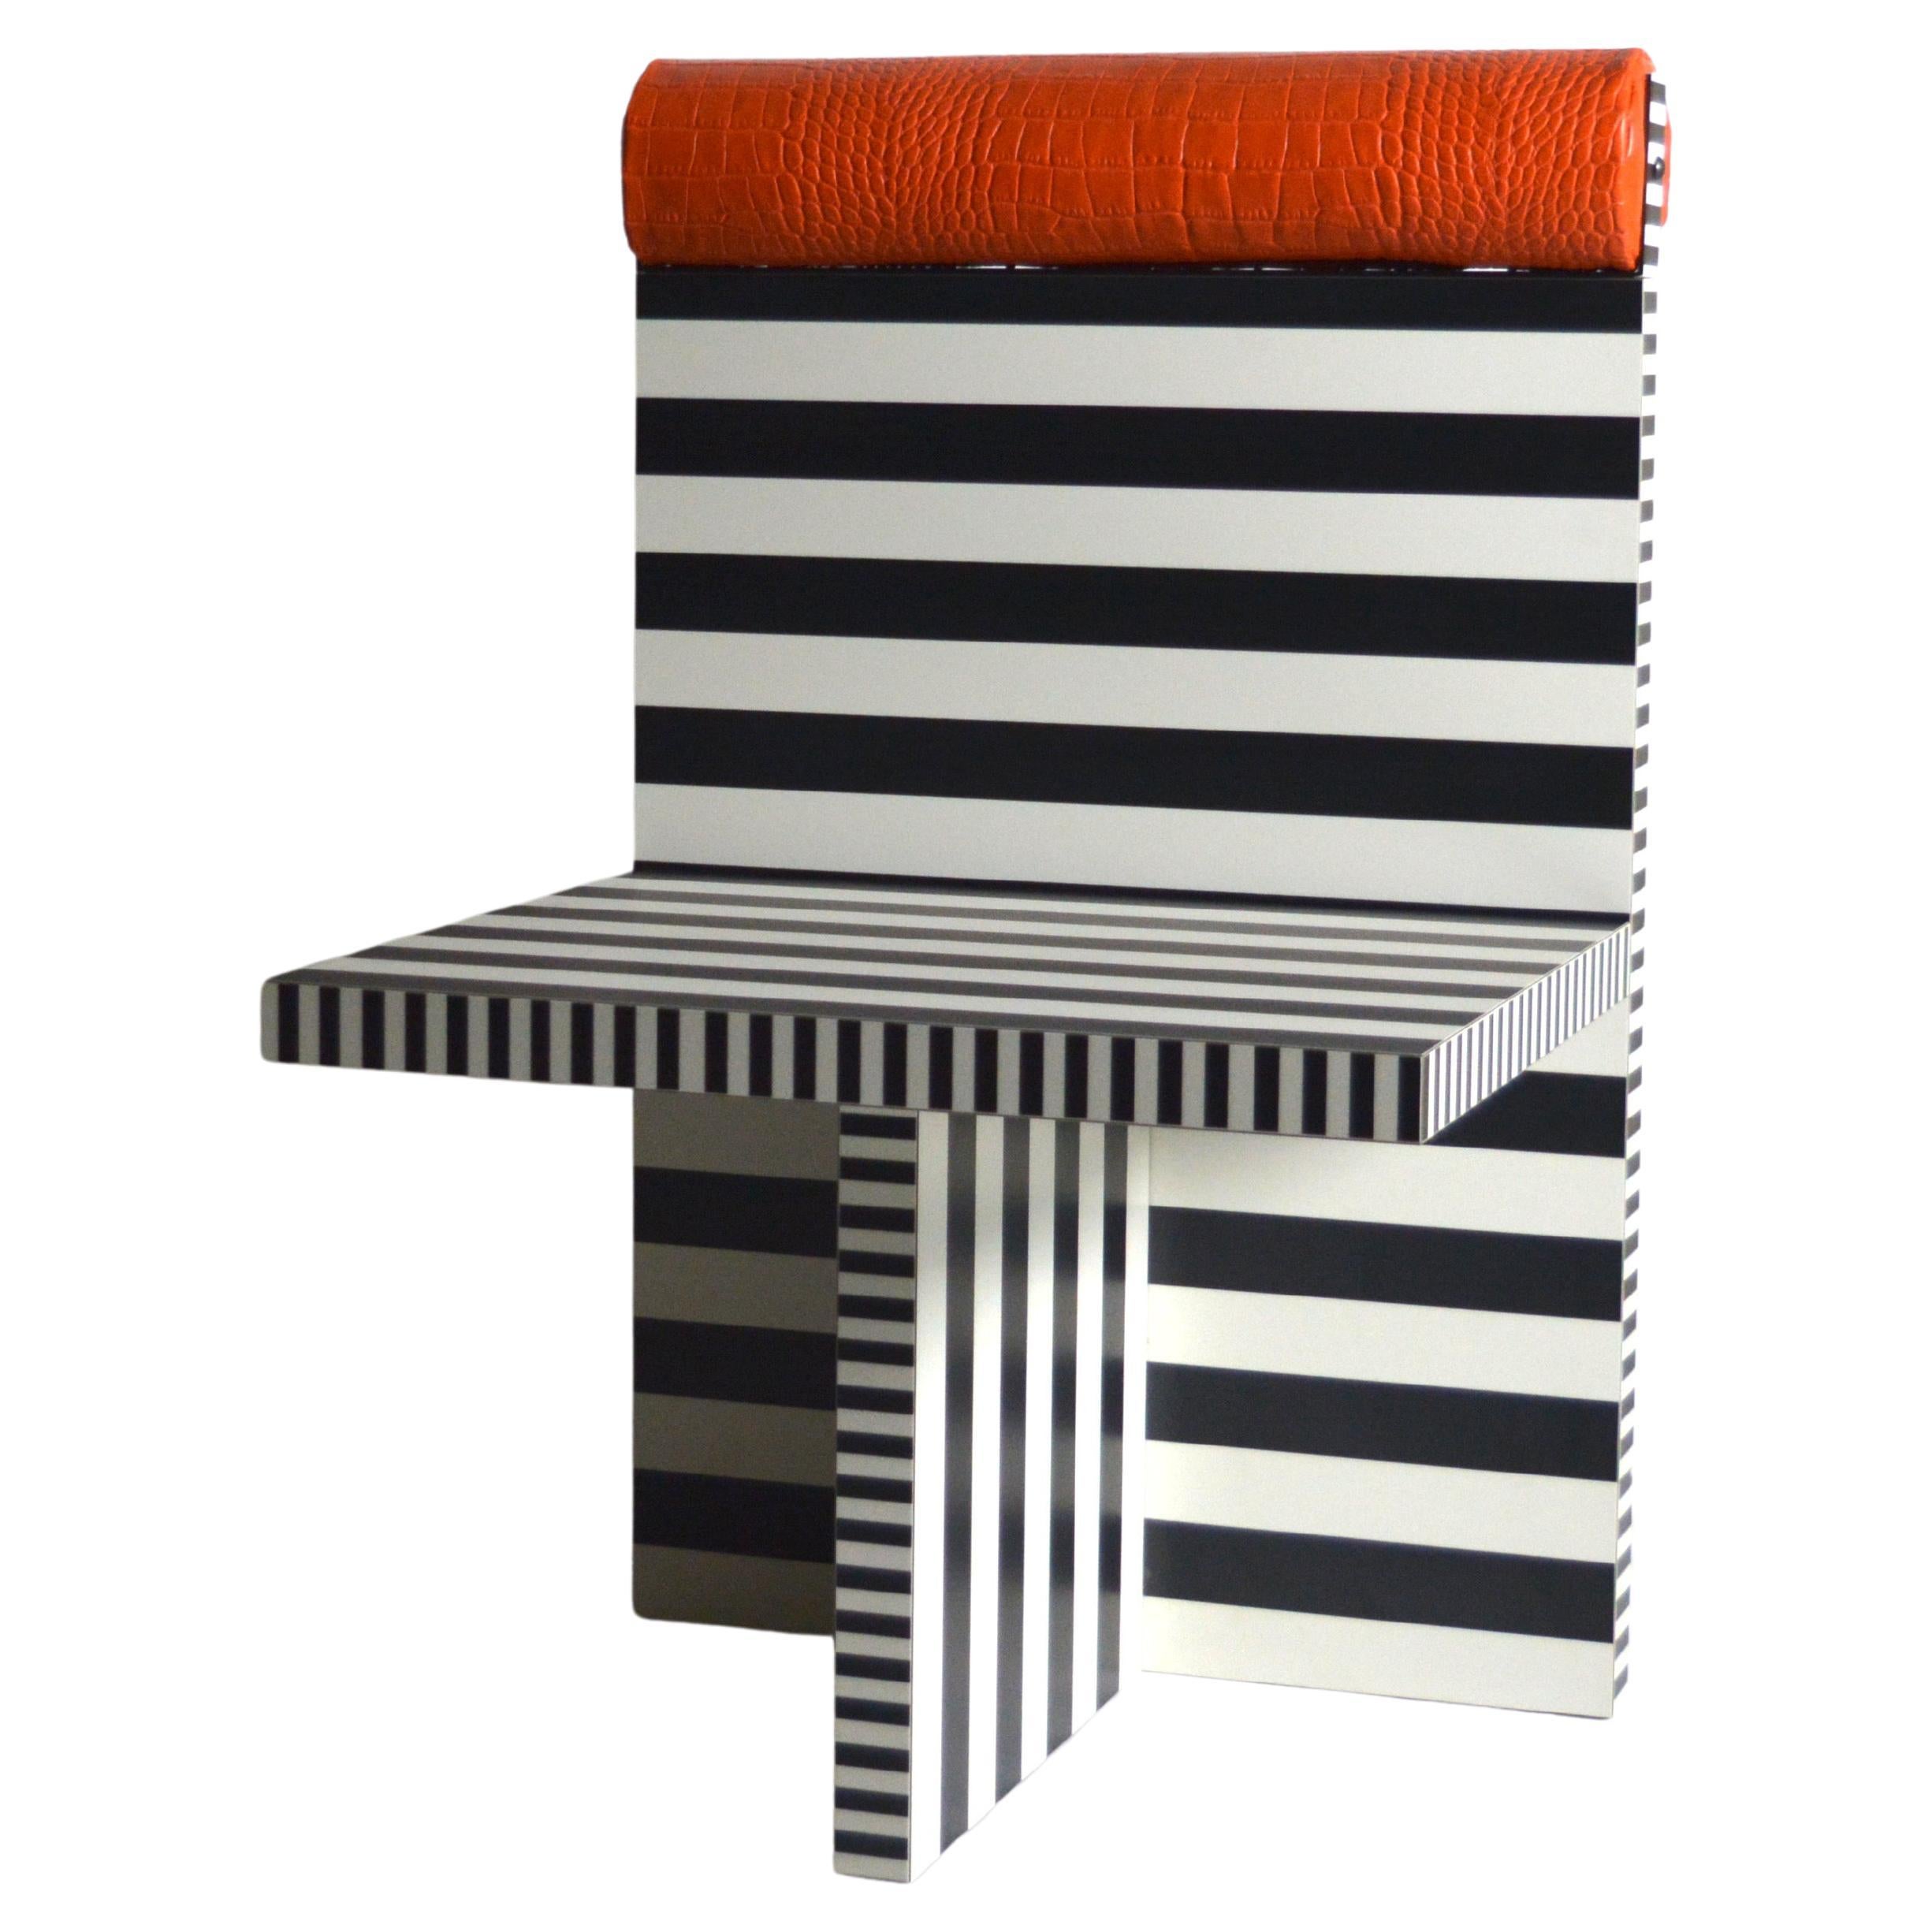 Ettore armchair memphis tribute black white lamiate orange leather Studio Greca For Sale